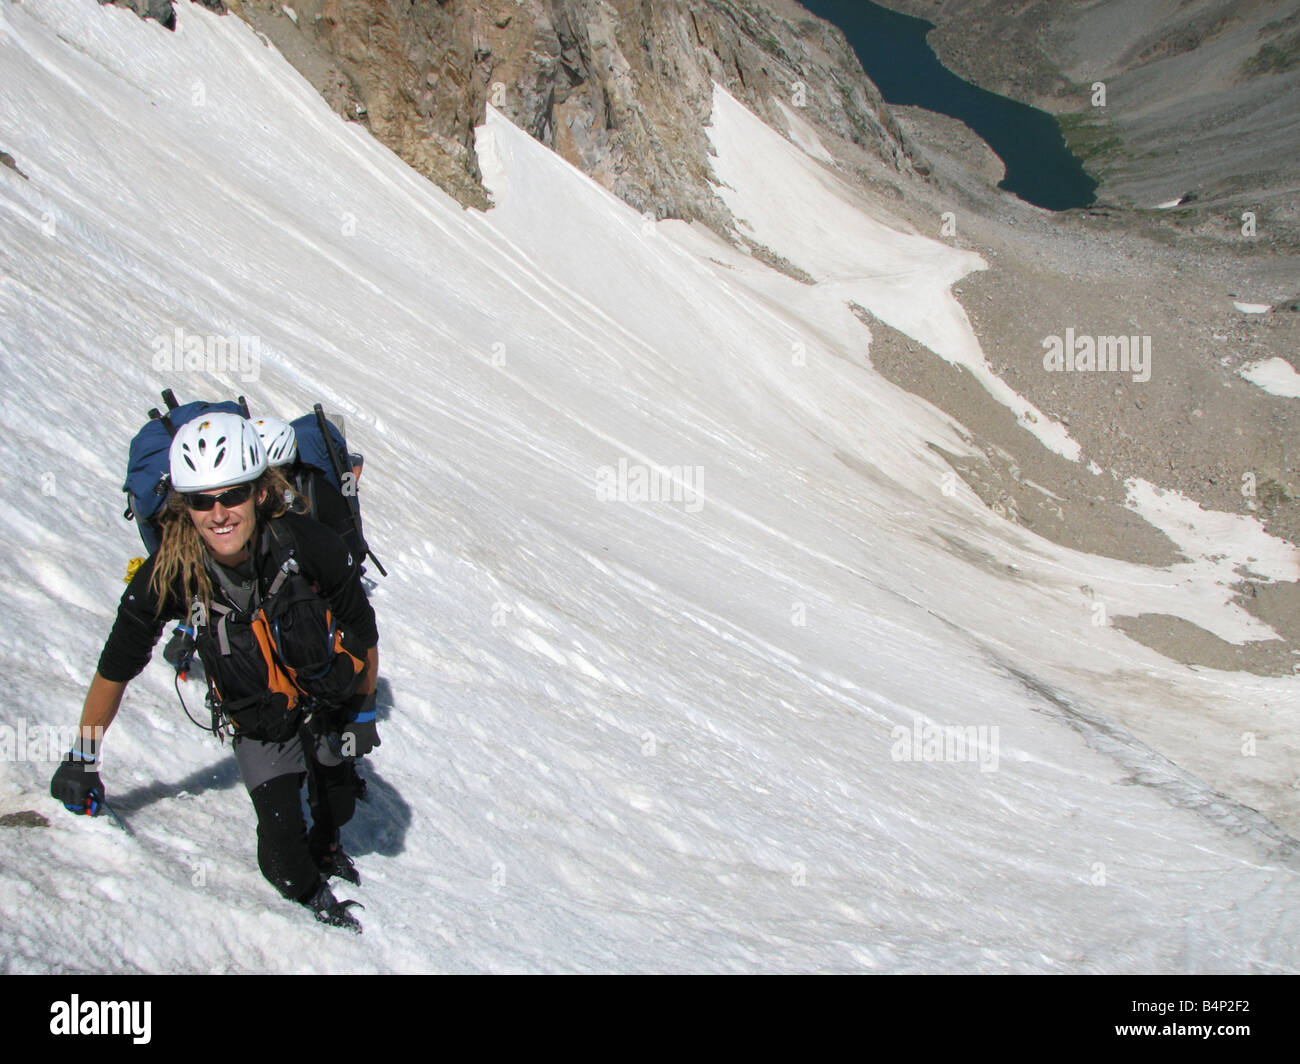 Un homme se hisse au sommet du glacier sur le côté nord de Granite Peak suivie de près par ses compagnons qui sont à peine visibles Banque D'Images